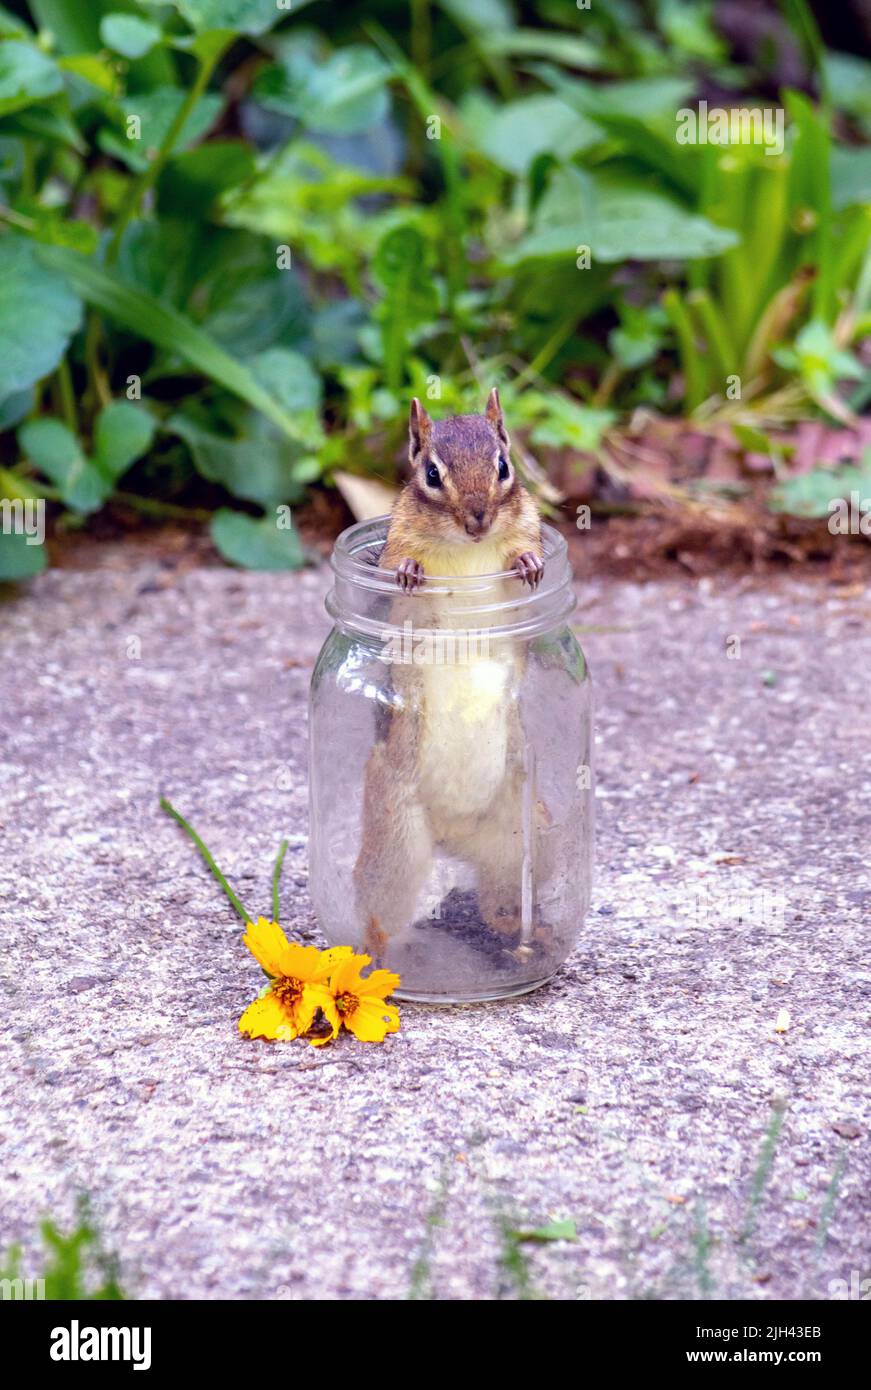 Winziges Nagetier steht in einem Glasgefäß, in dem noch ein bisschen Sonnenblumenkerne stehen. Stockfoto